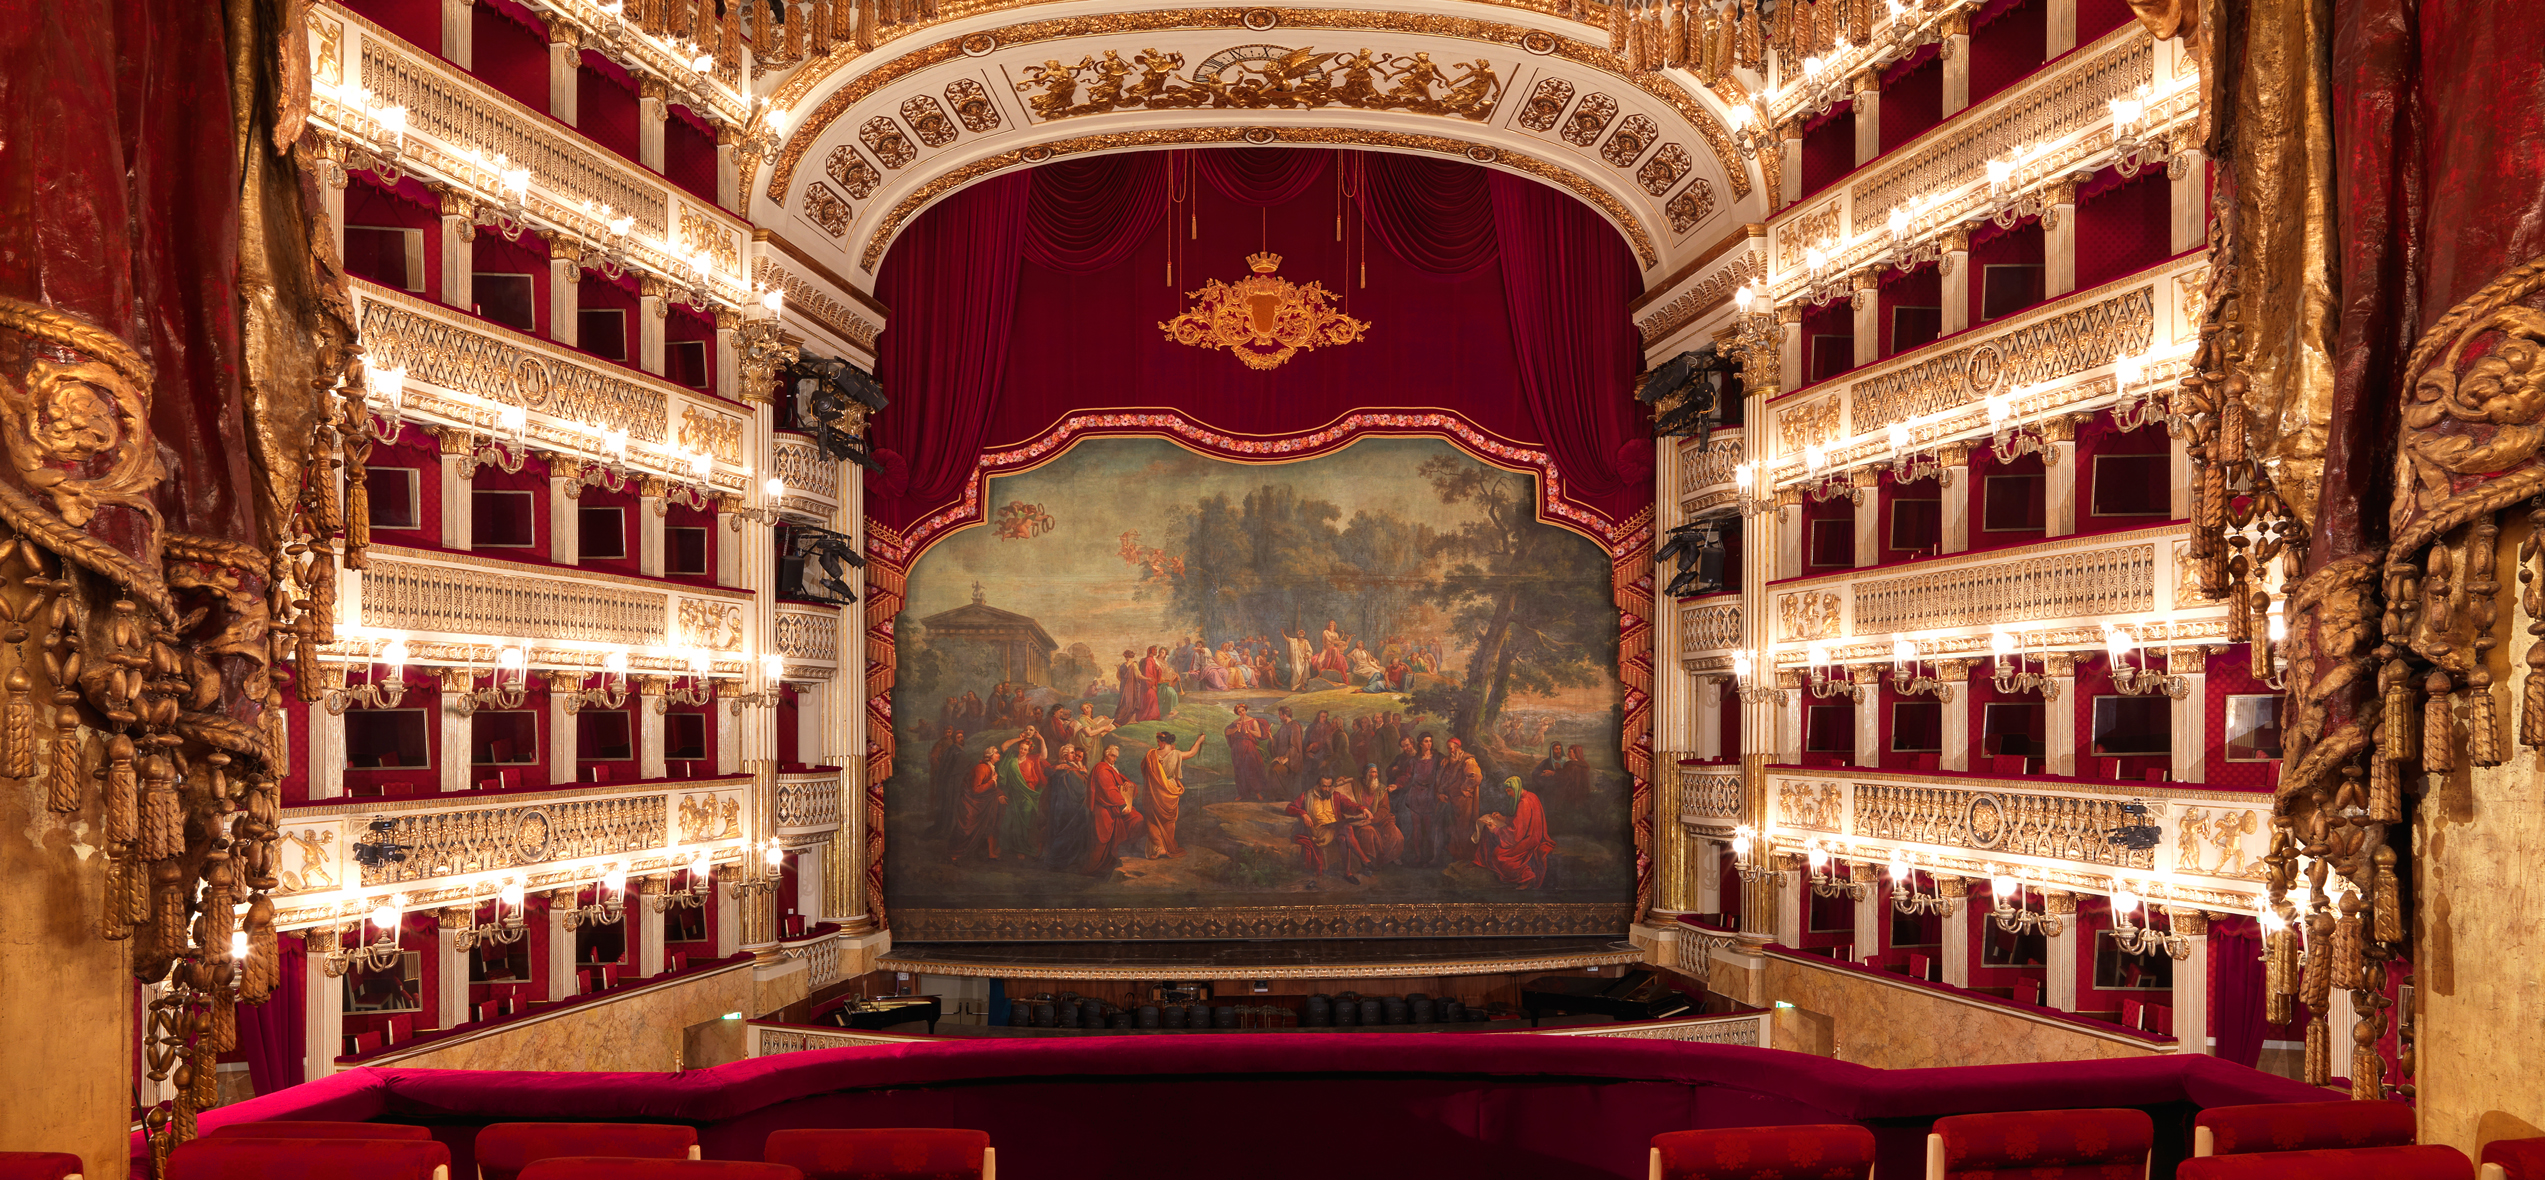 Teatro di San Carlo - Home